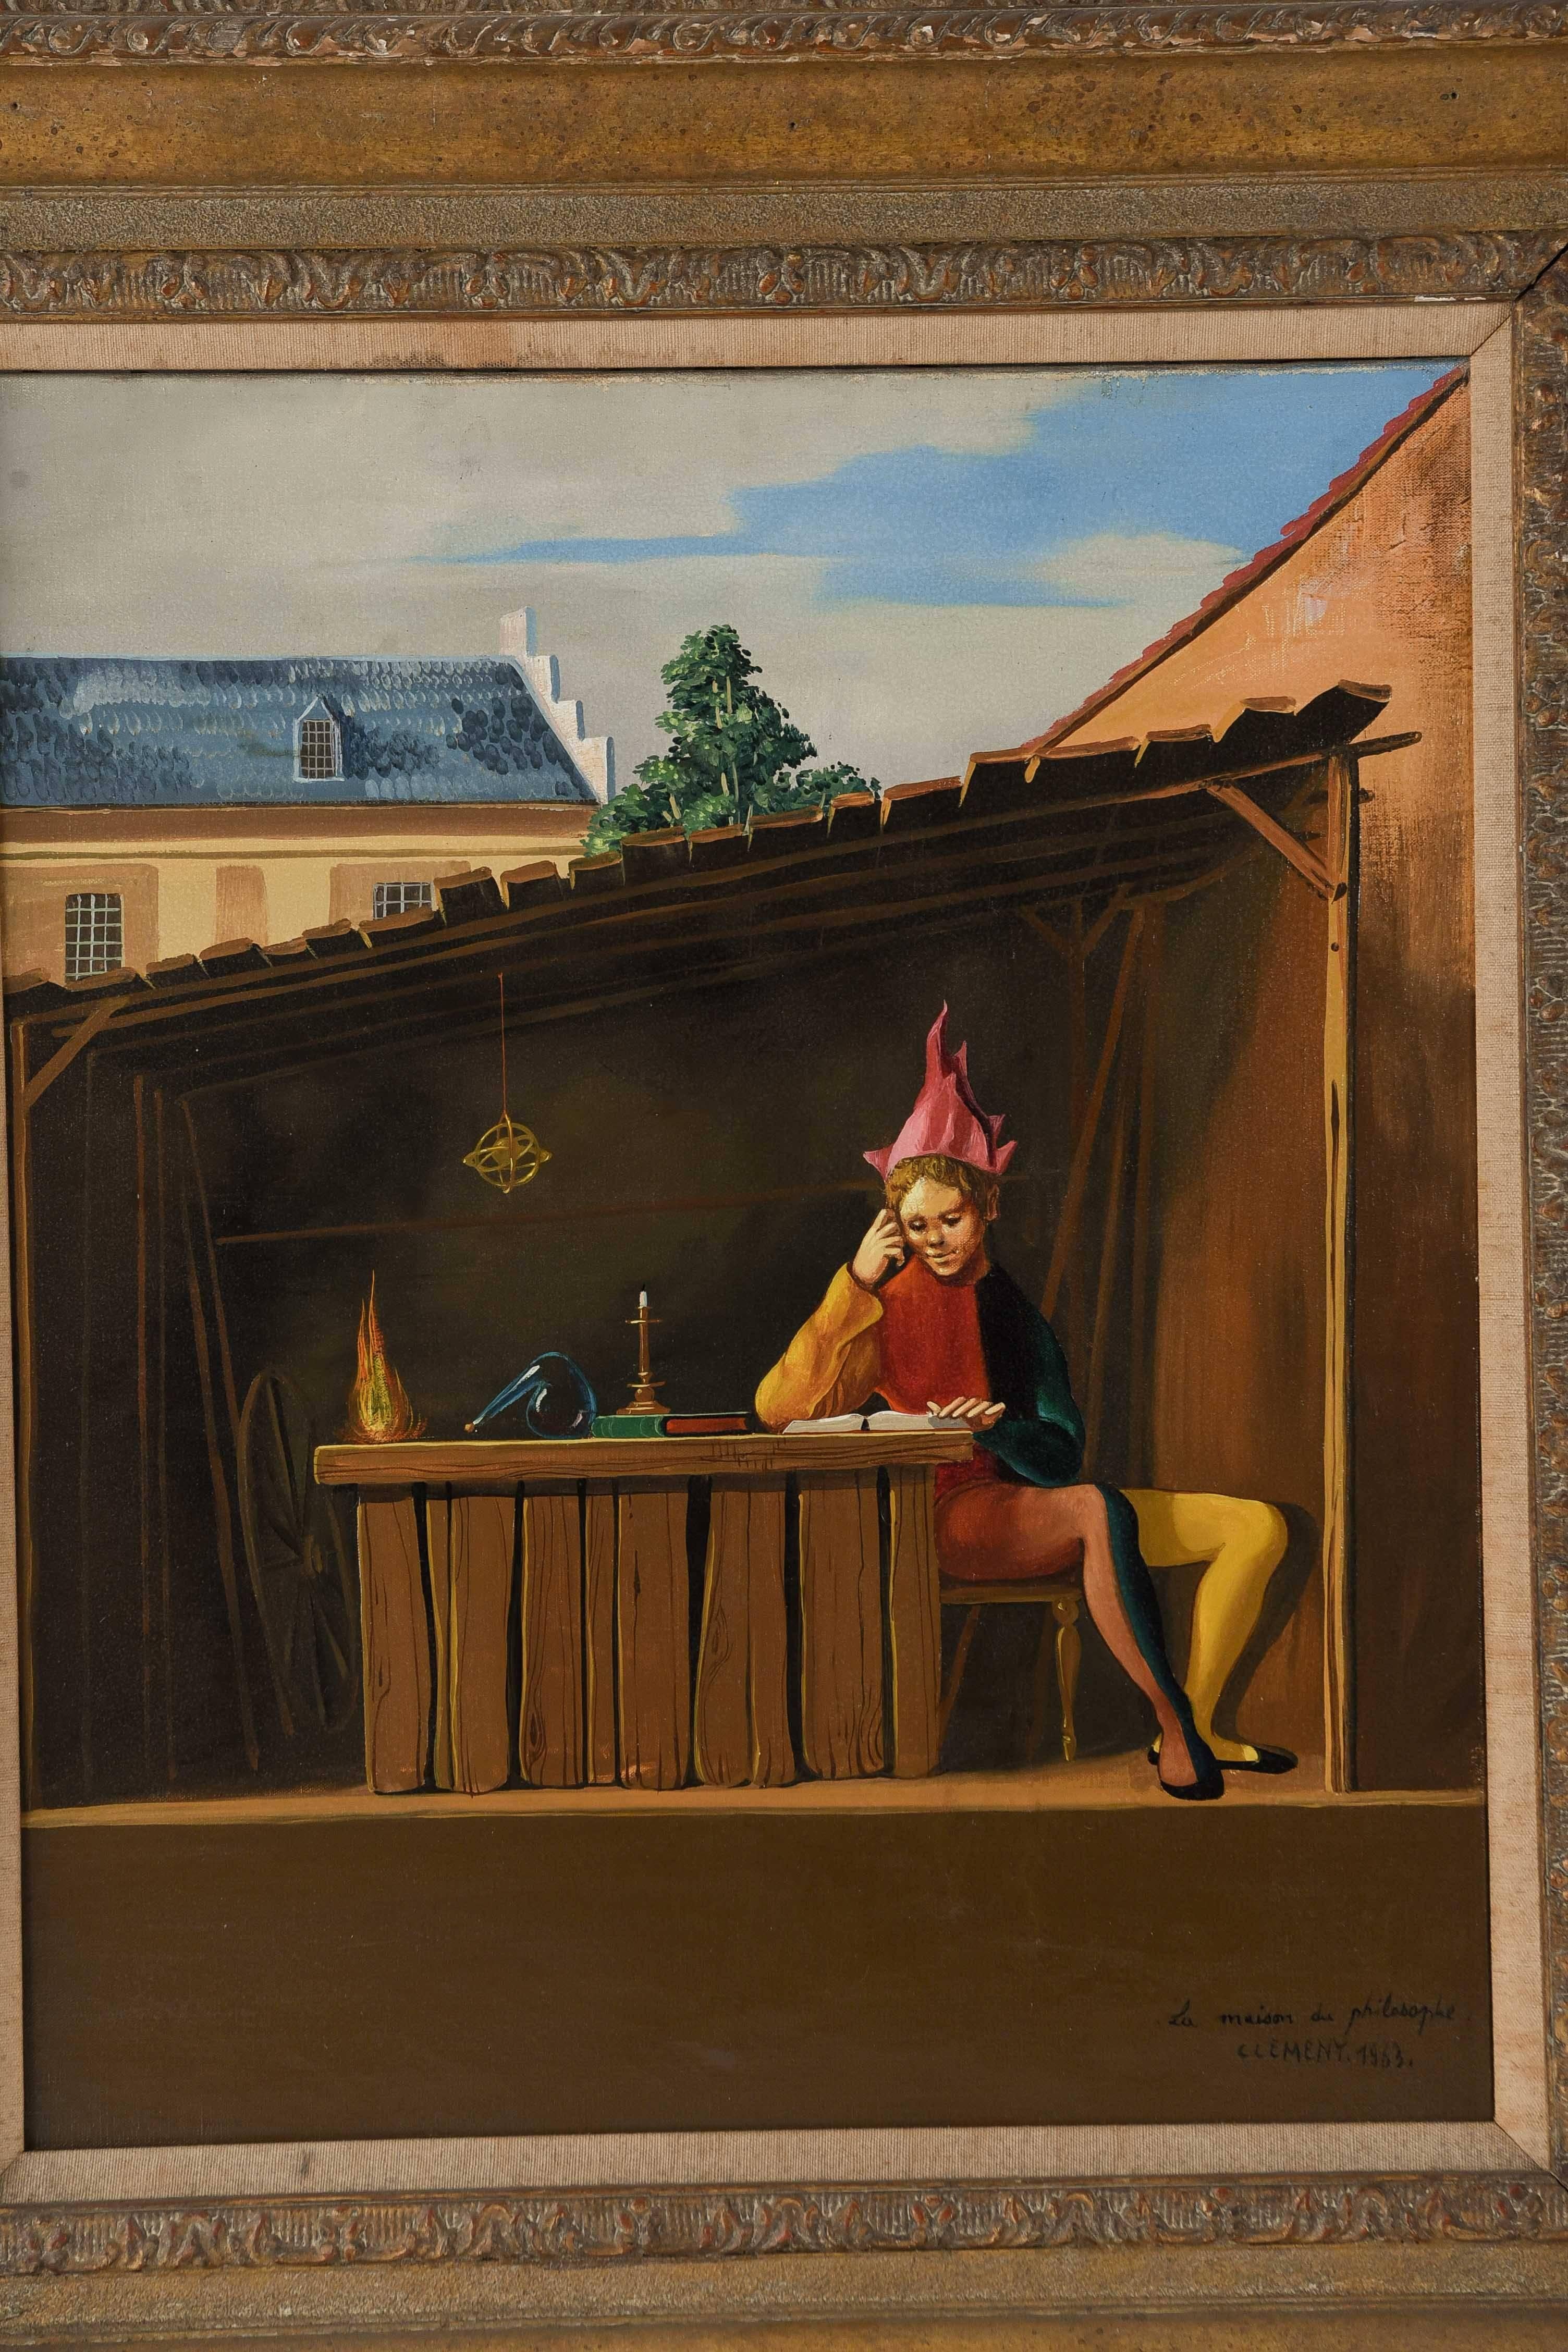 Ein surrealistisches Gemälde des französischen Künstlers Jean Pierre Clement, das eine männliche Figur in narrenähnlicher Kleidung und mit hellrotem Kopfschmuck darstellt. Er scheint in einem kleinen, überdachten Schuppen neben einer unbeleuchteten